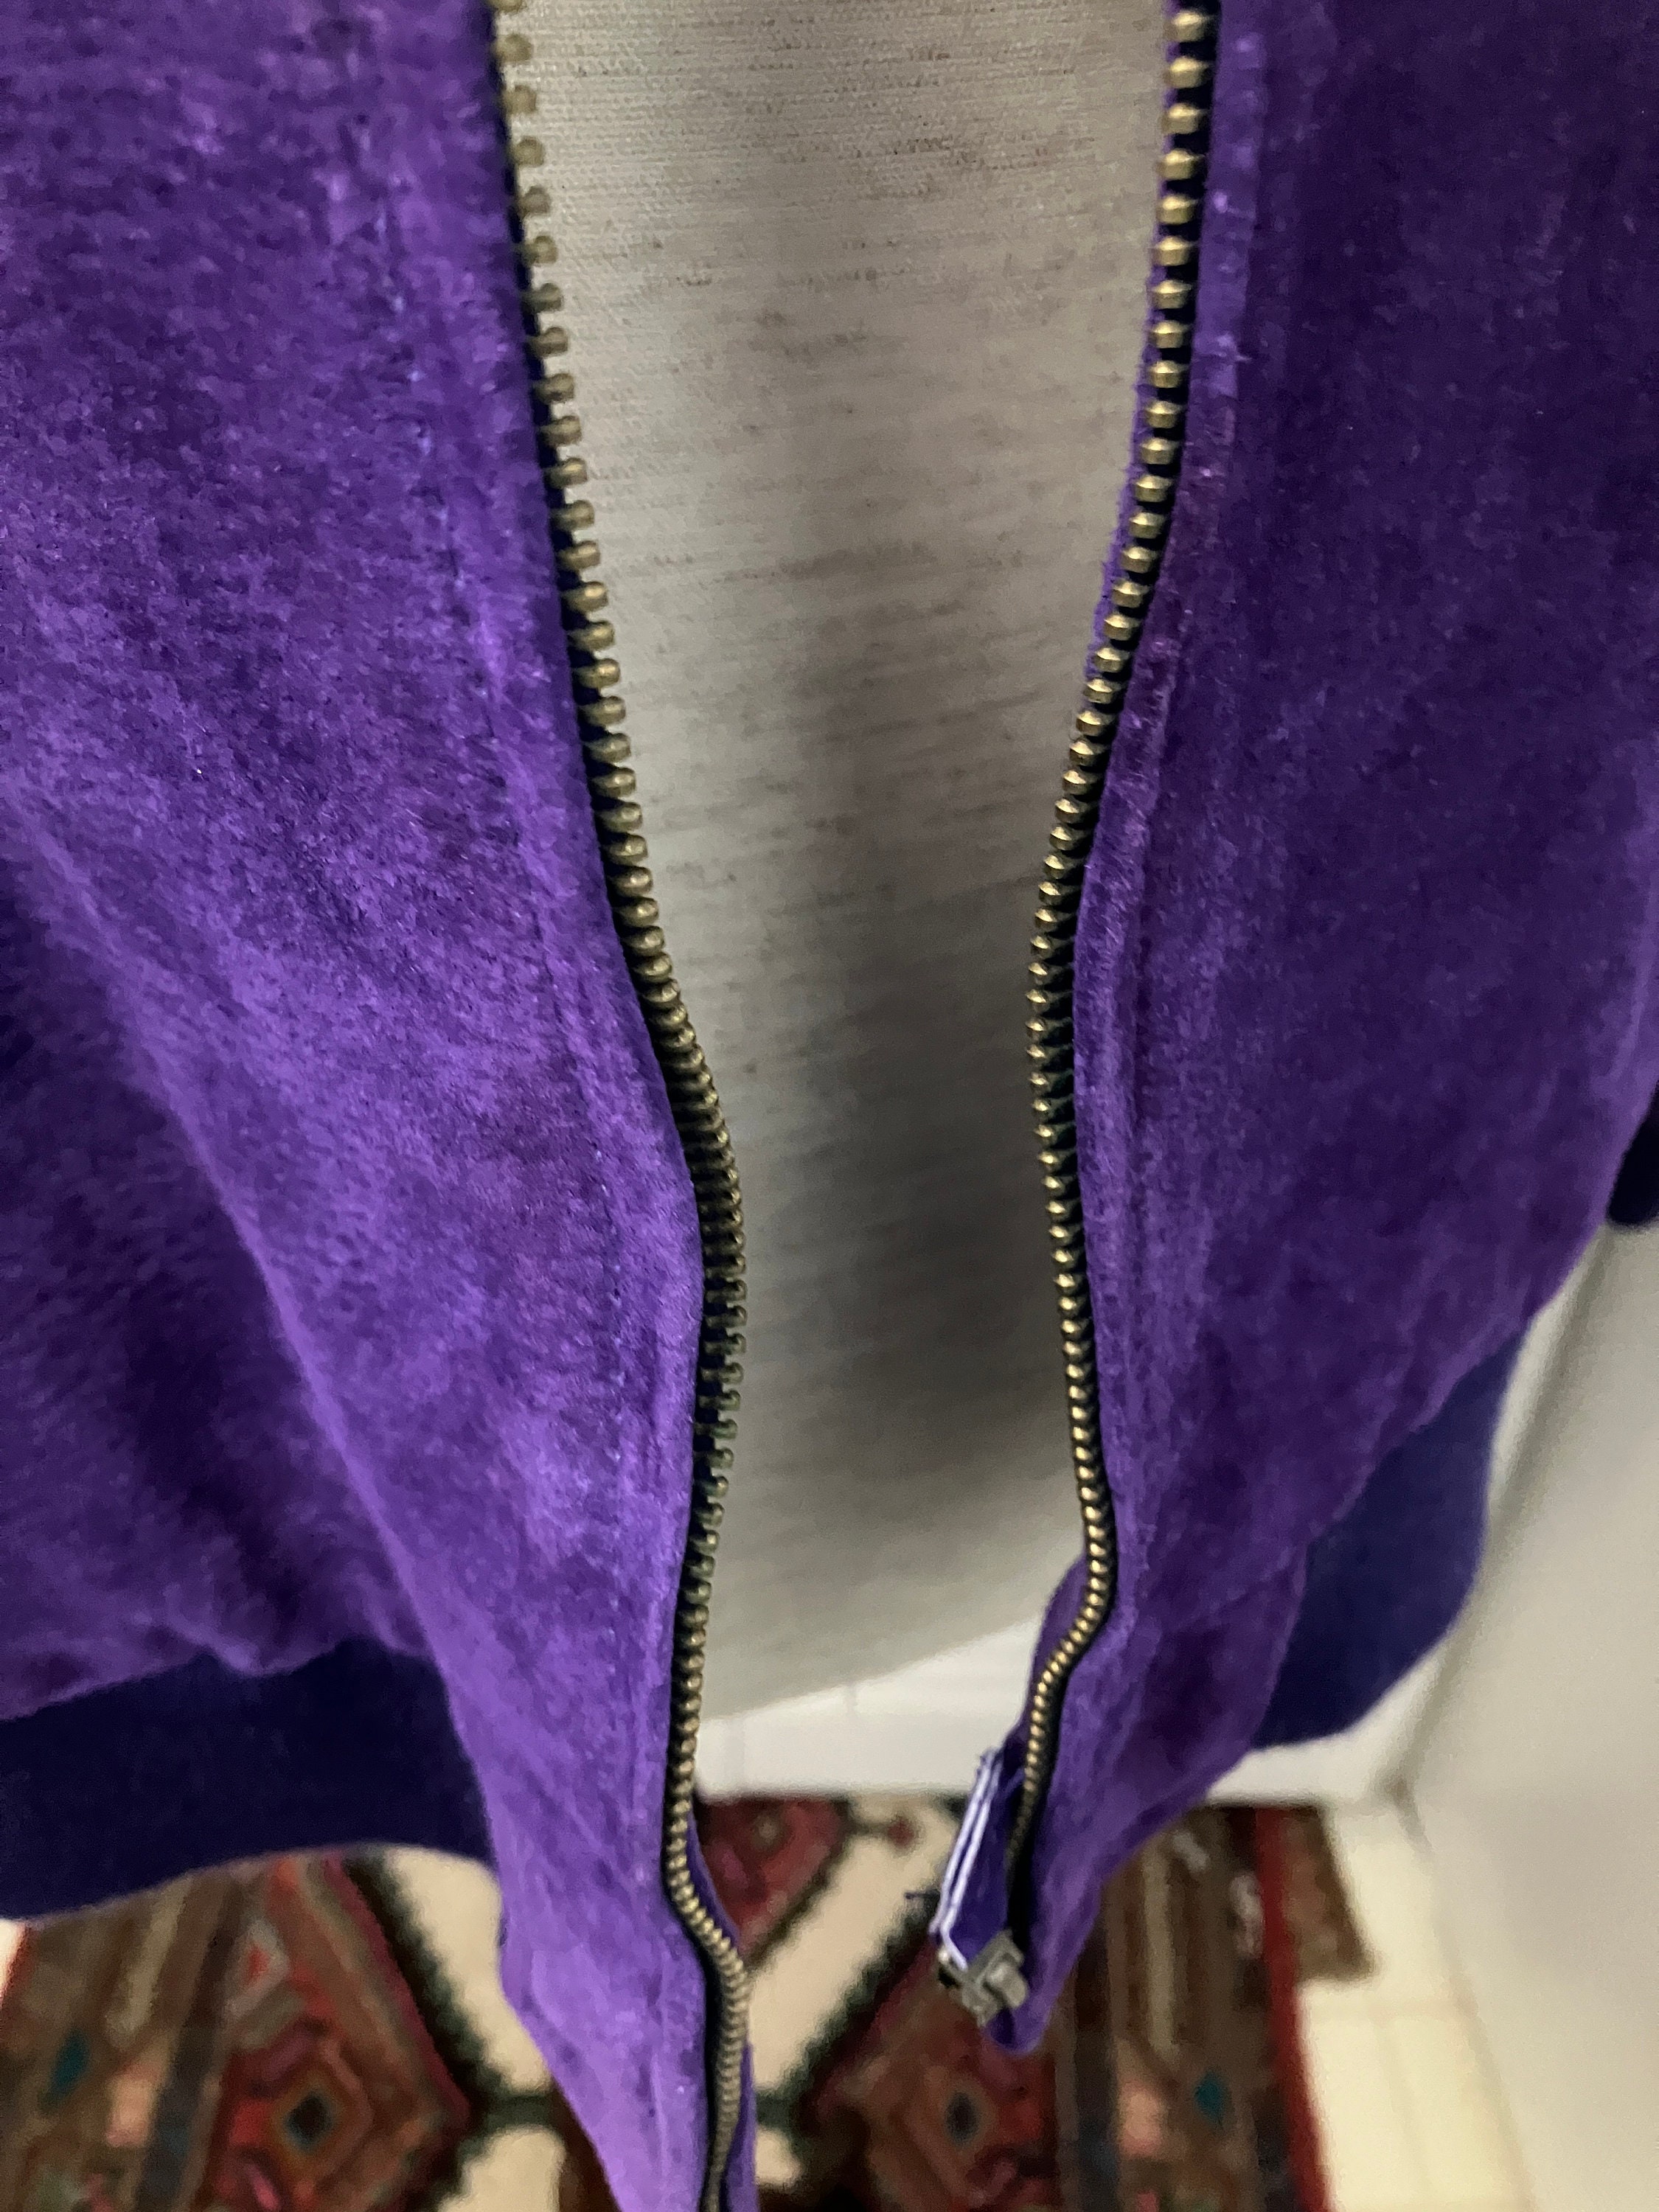 Women's Varsity Bomber Jacket in Regal Purple